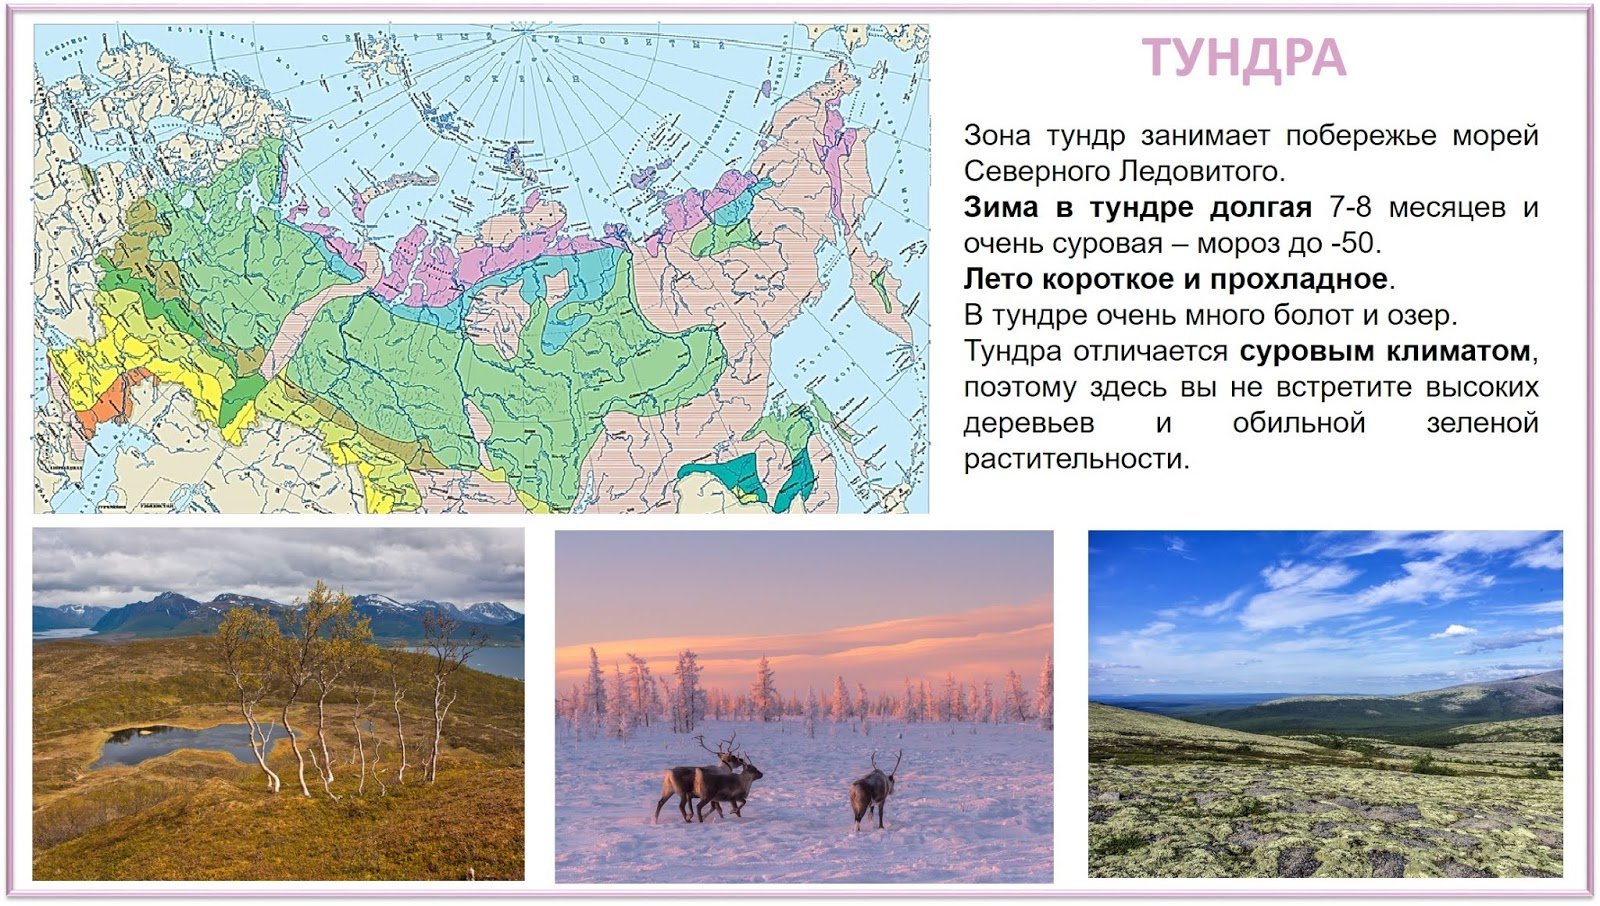 В сибири большую площадь занимает природная зона. Тундра природная зона расположение в России. Тундра на карте природных зон. Географическое положение зоны тундры в России. Зона тундры на карте природных зон.